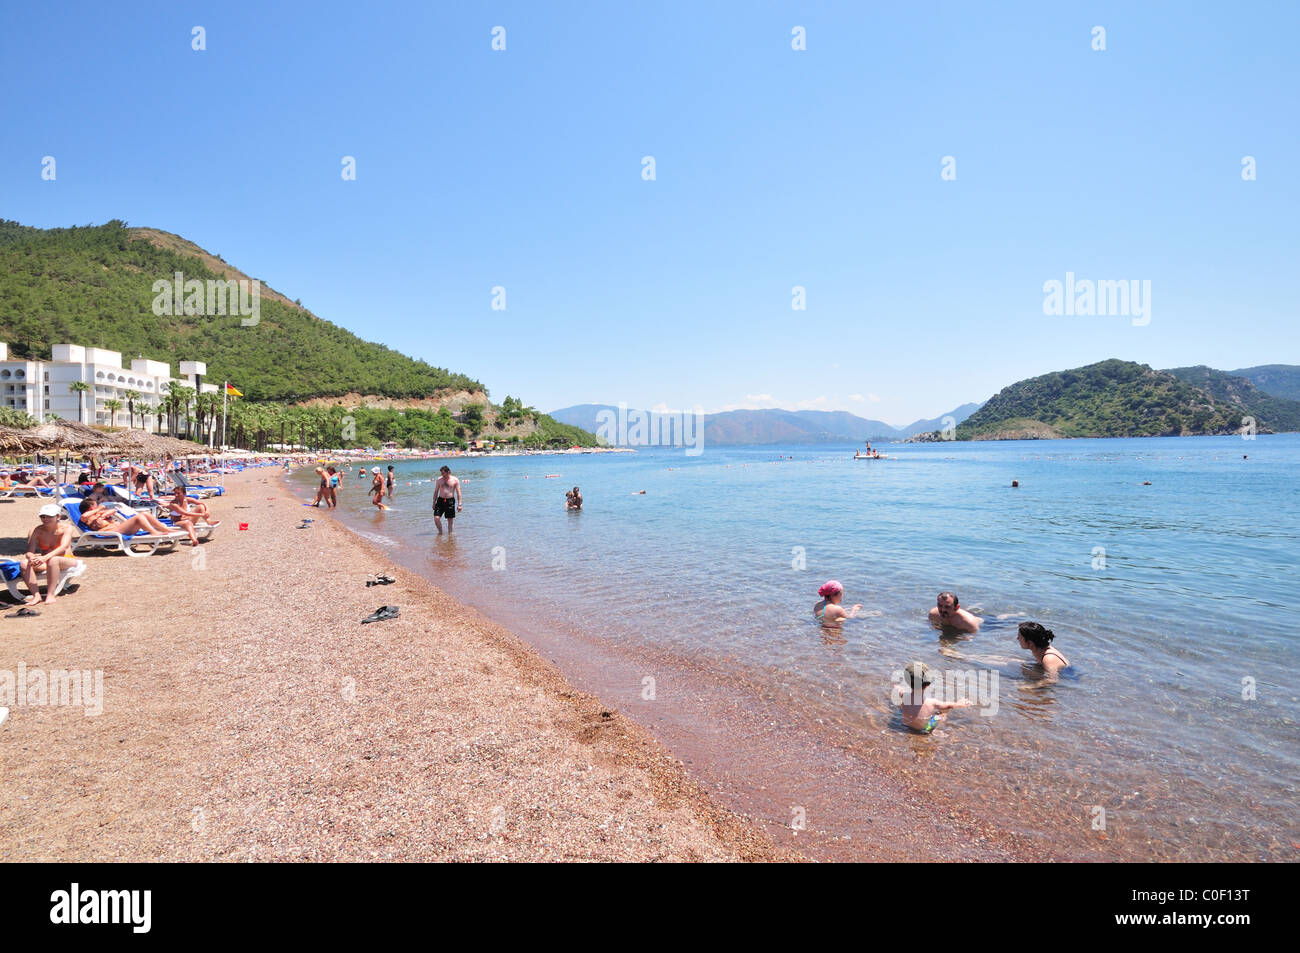 Vue d'une plage de sable fin avec des gens à bronzer et à vous baigner dans la mer Égée, Icmeler, Turquie, Europe Banque D'Images